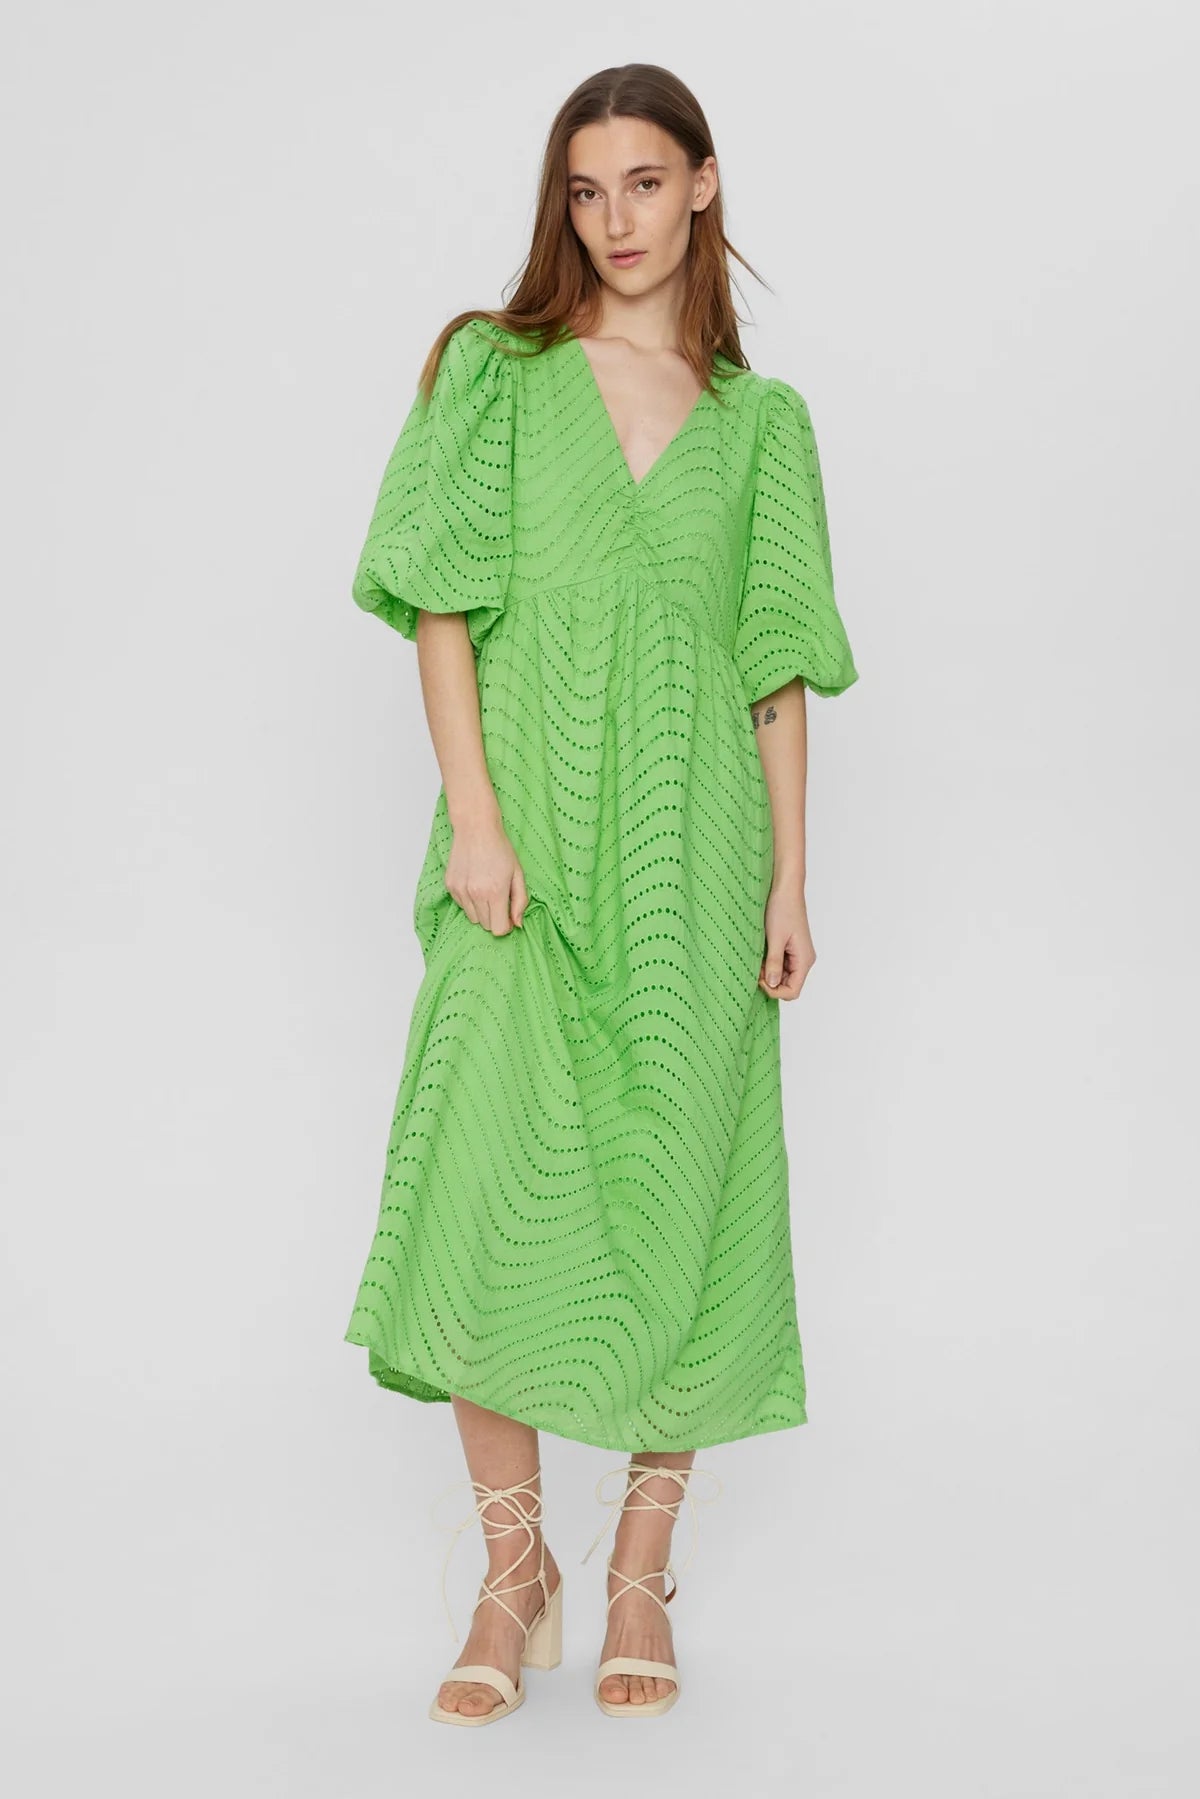 NuEvelyn Dress Green